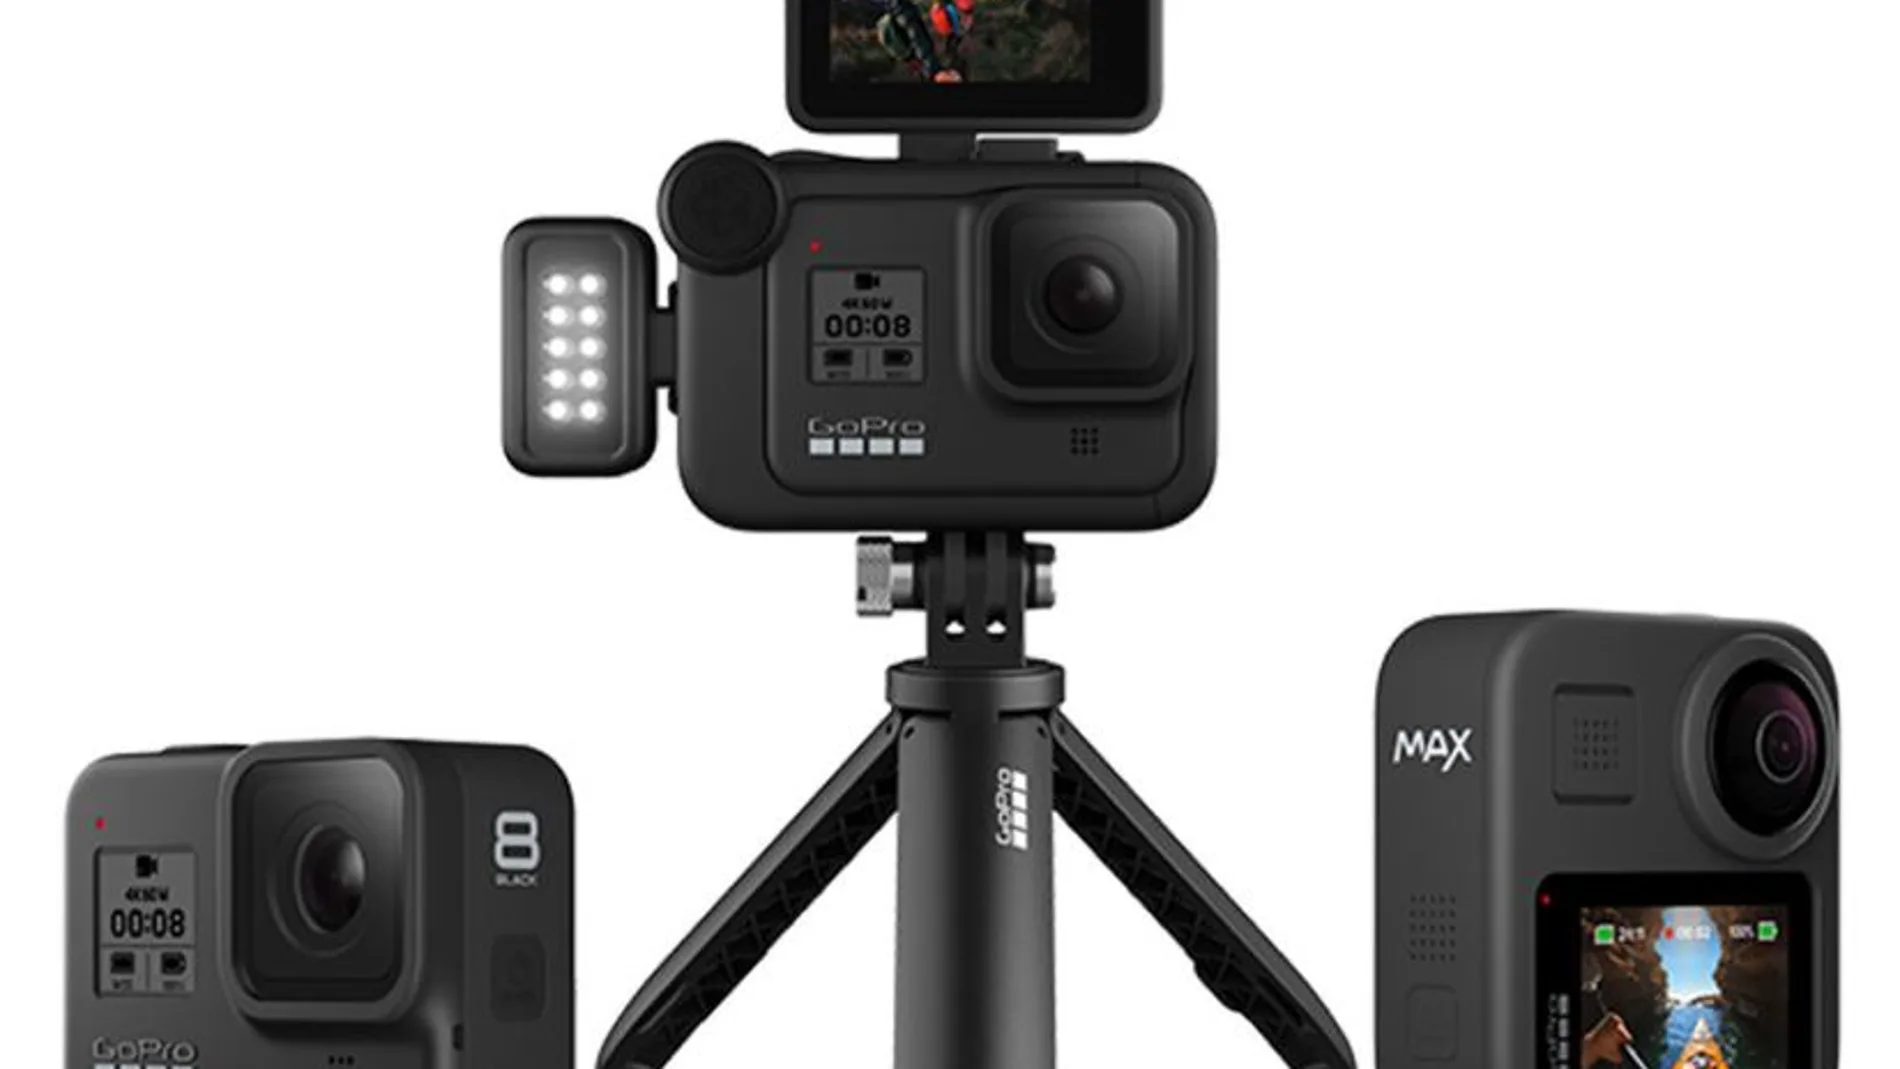 Las nuevas GoPro Hero 8 Black y GoPro Max de 360 grados